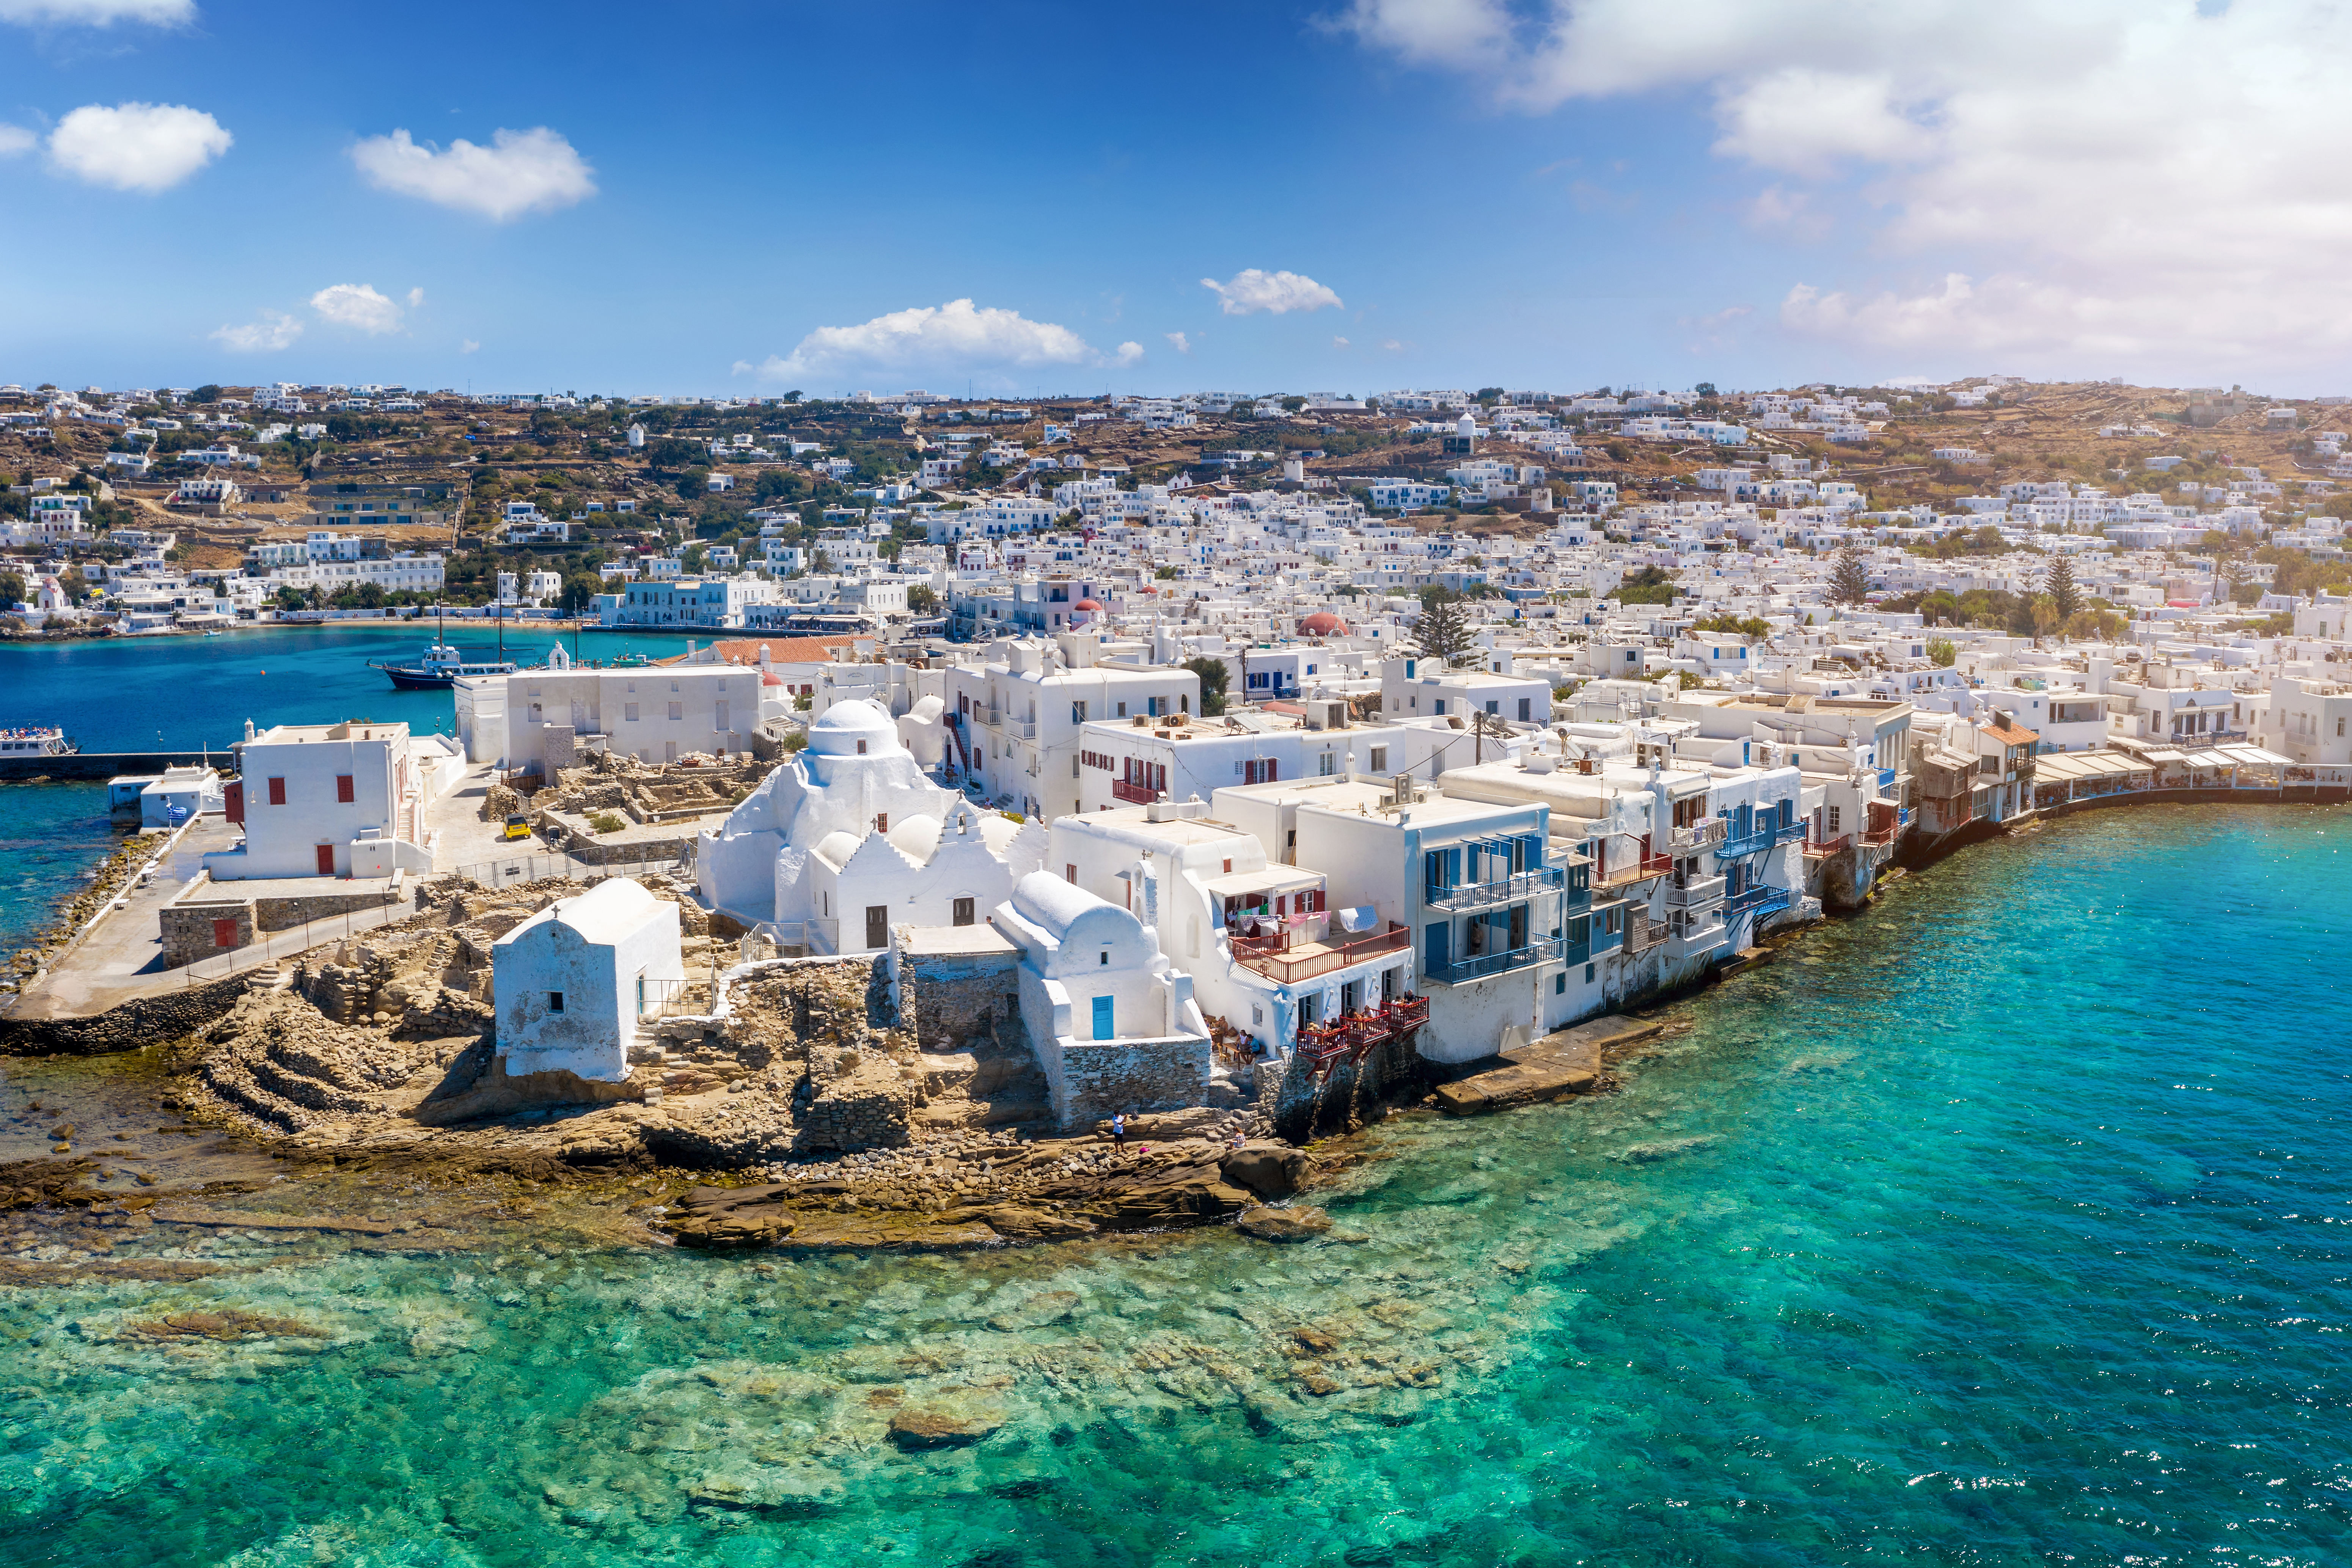 Красивая набережная Греции как символ программі получения гражданства